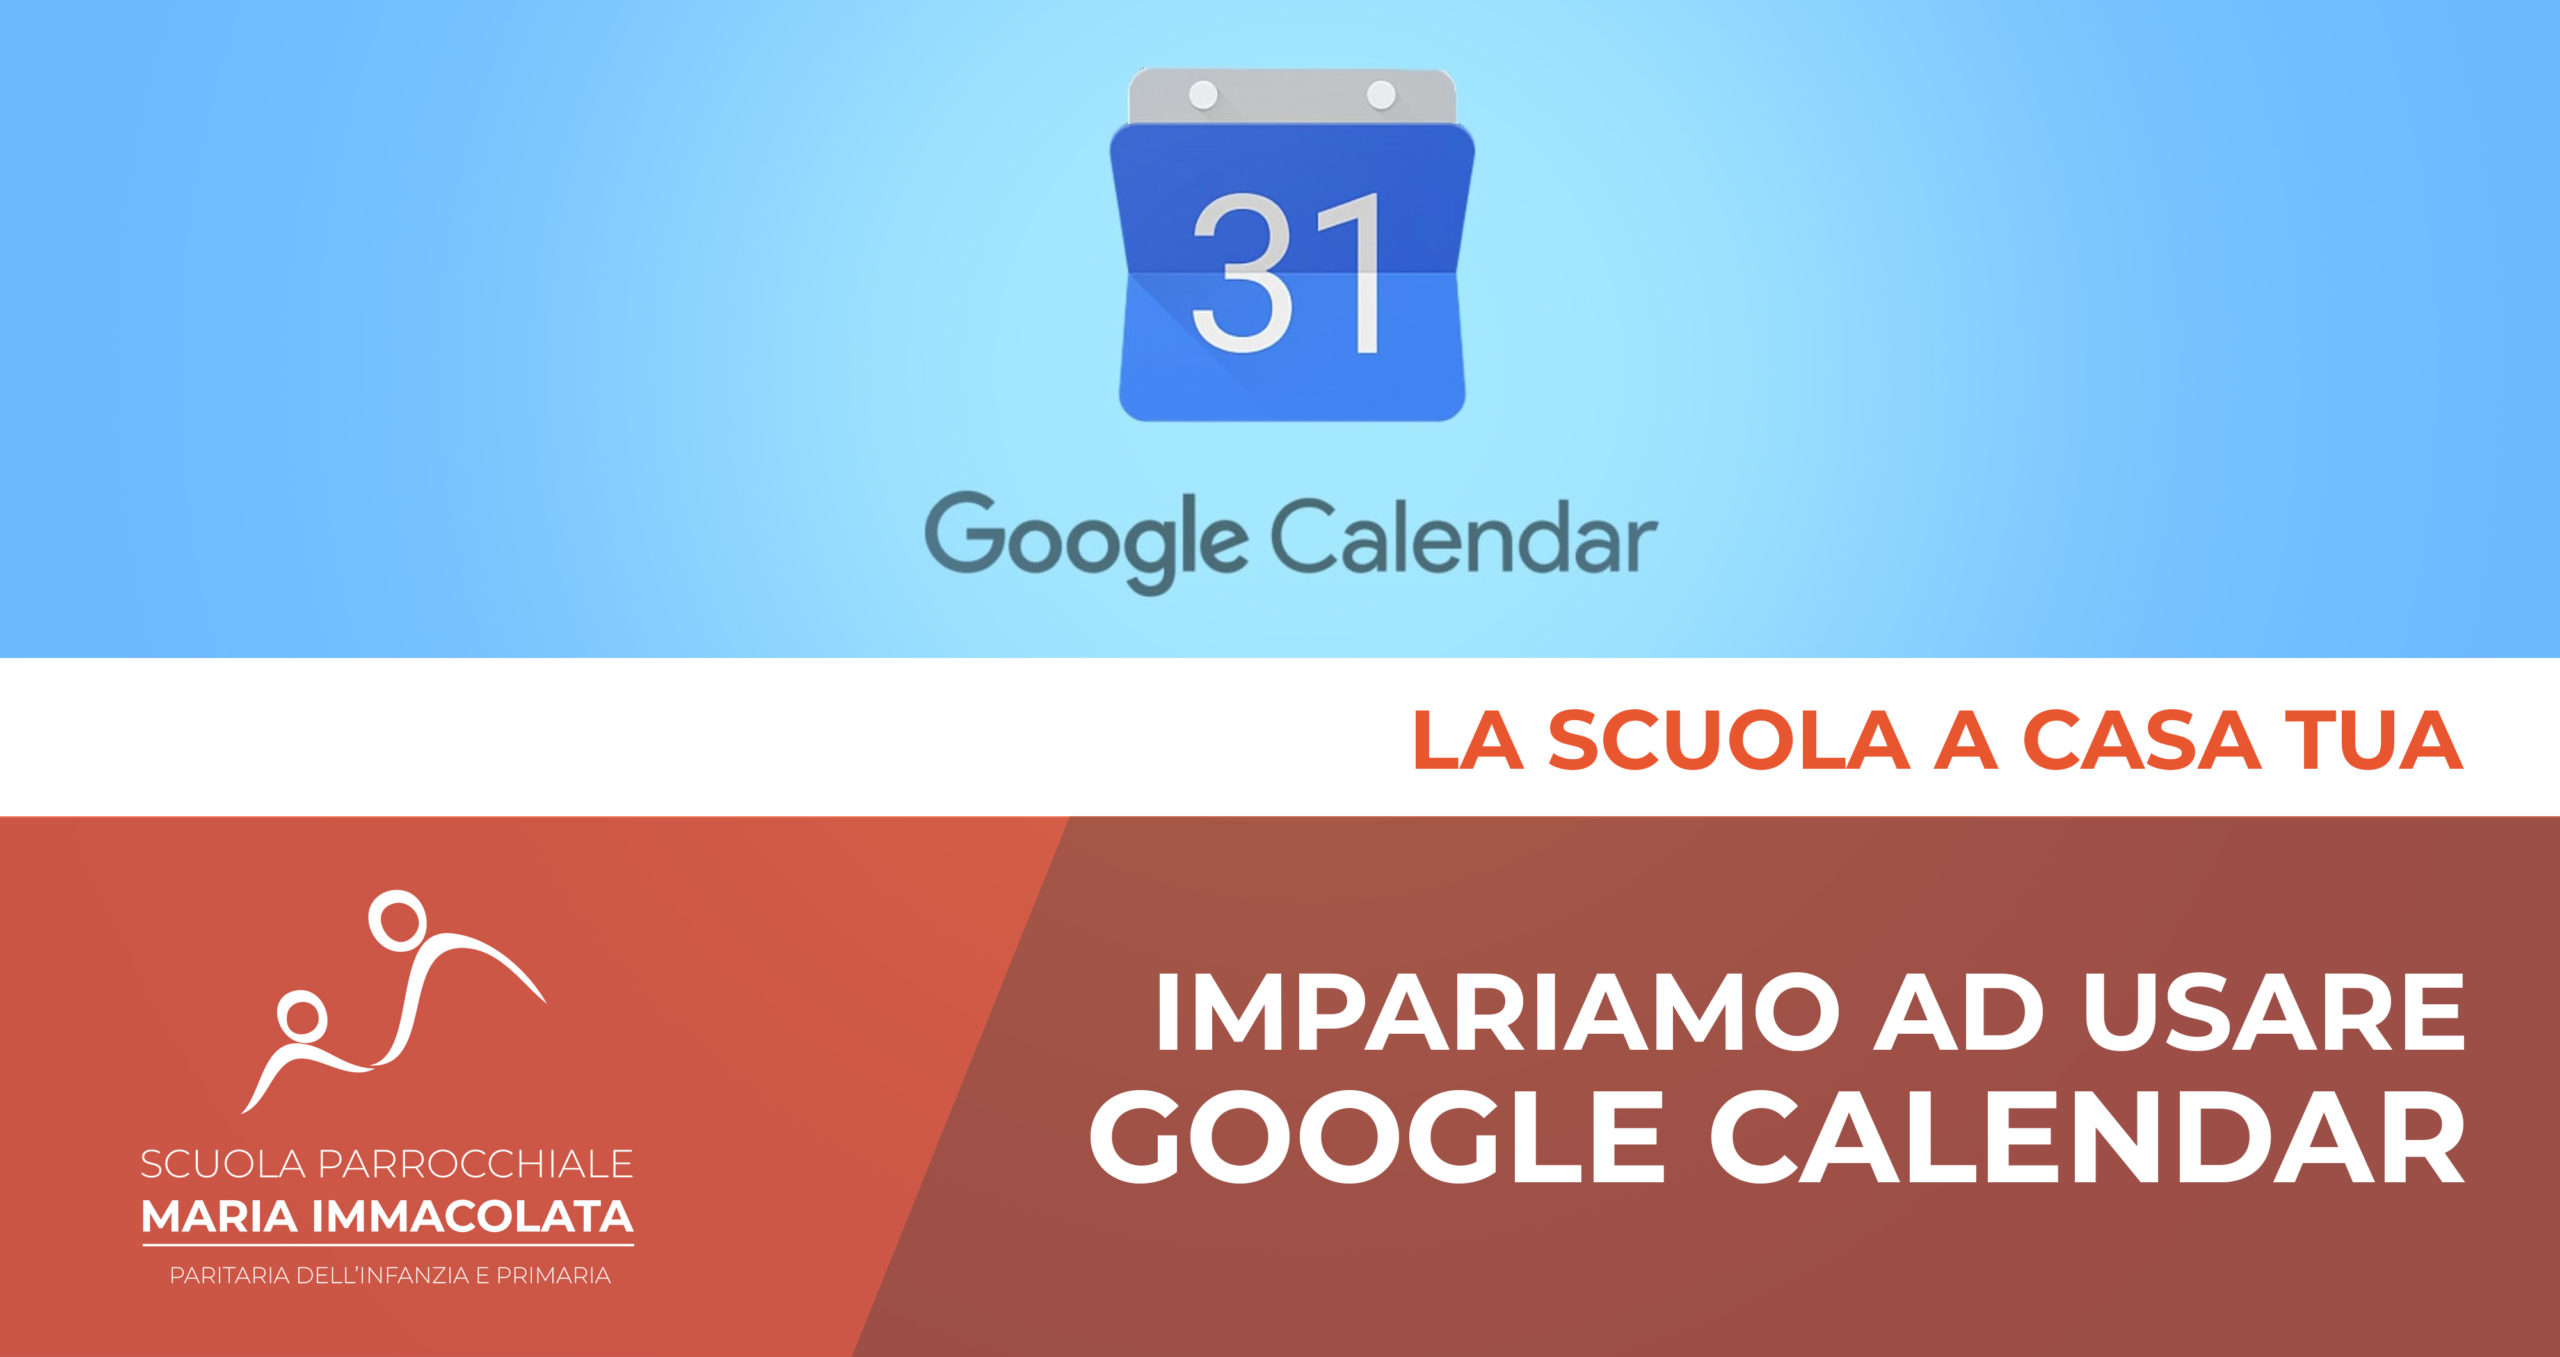 Google Calendar: il nostro nuovo diario